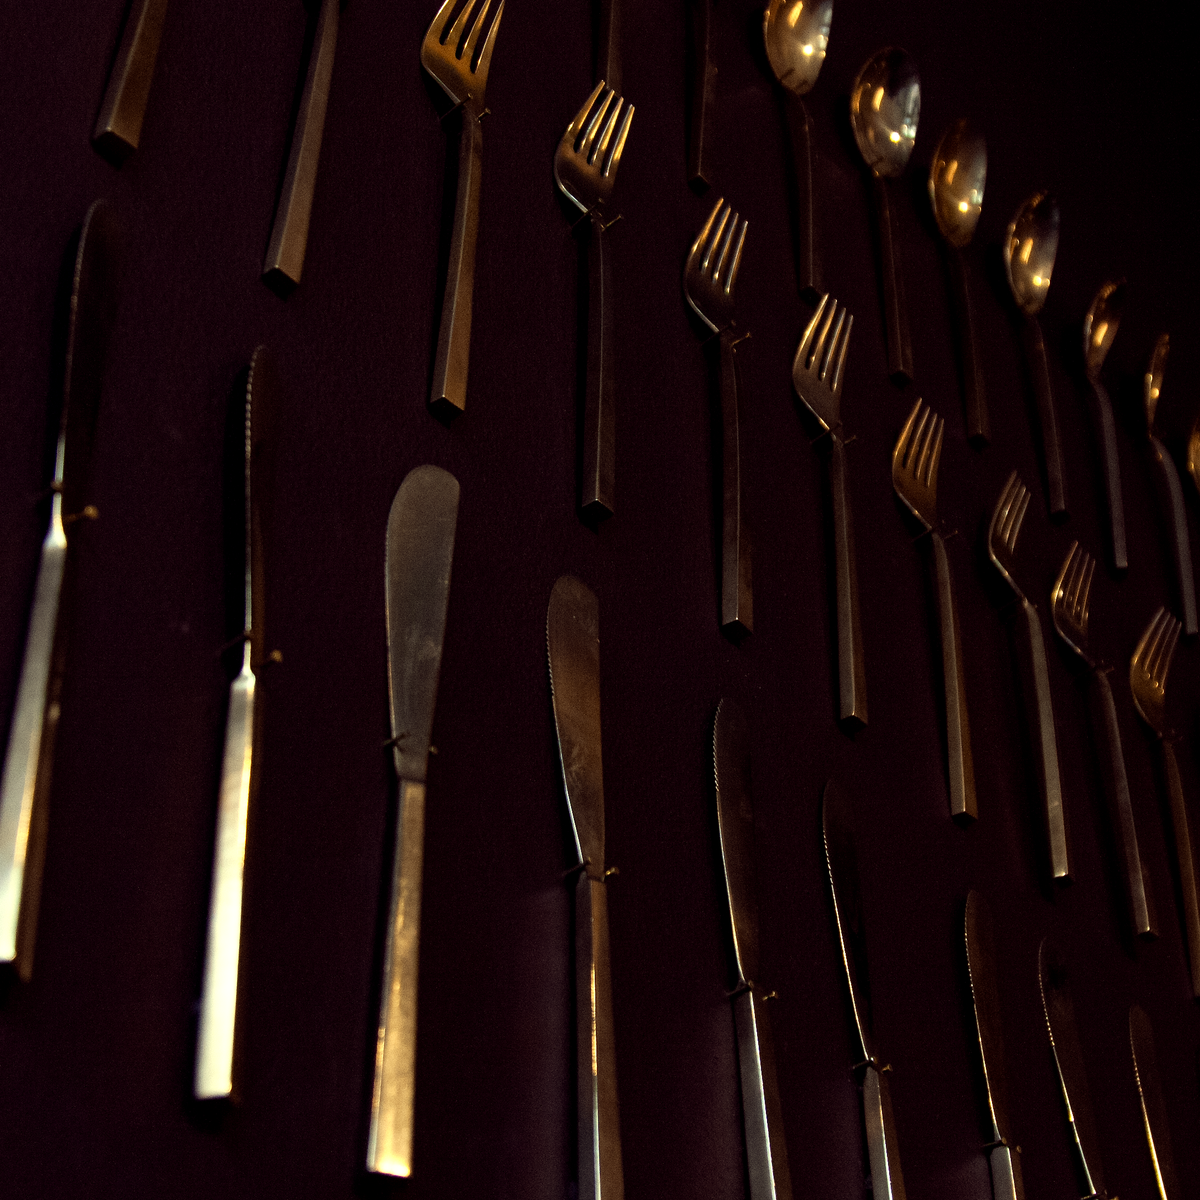 127 Piece Brass Cutlery Set / Sigvard Bernadotte